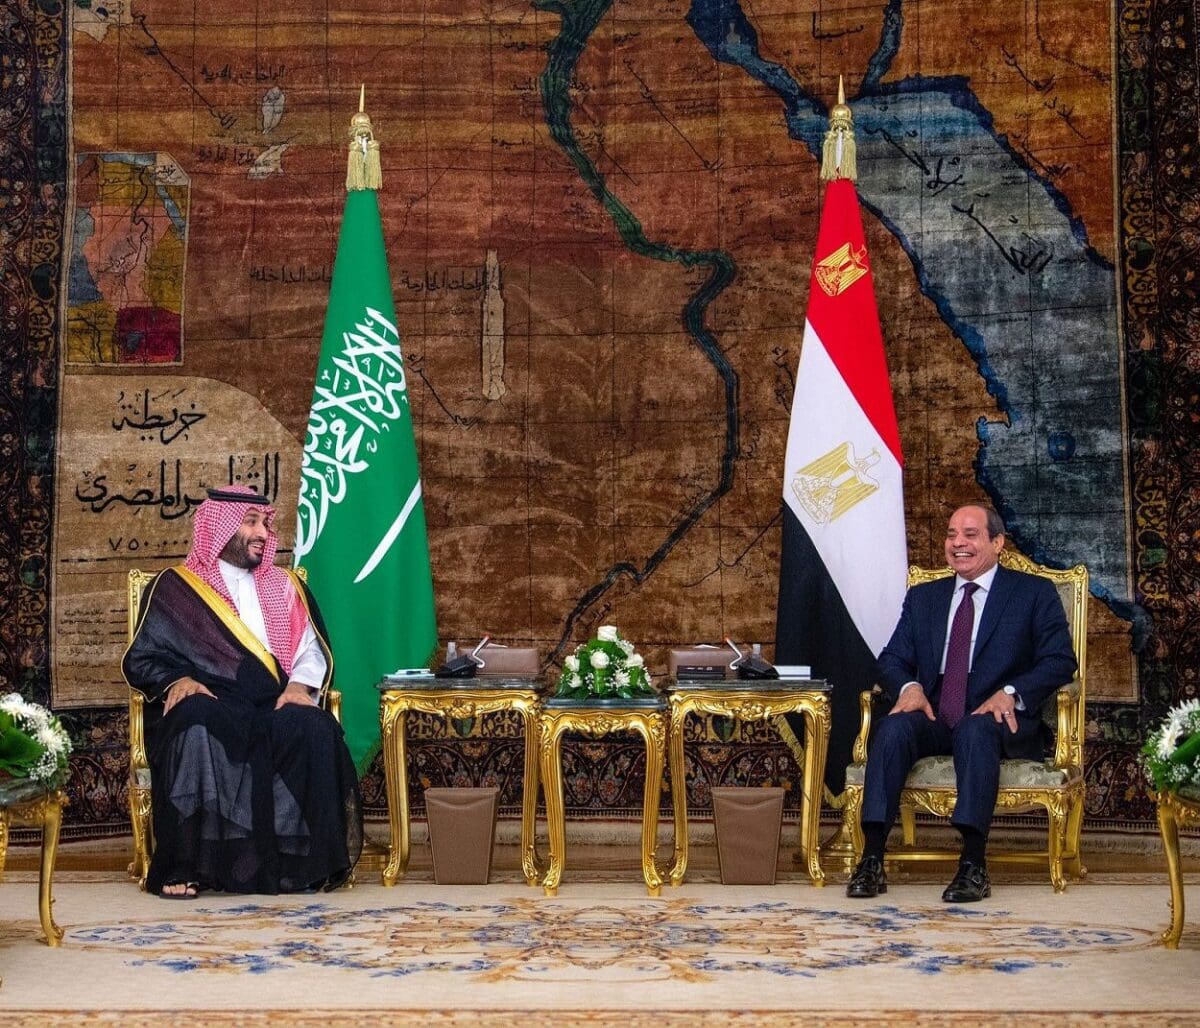 عاجل | 30 مليار دولار استثمارات سعودية في مصر وصفقات واتفاقيات ضخمة وبيان سعودي مصري عن نتائج زيارة ولي العهد السعودي لمصر.